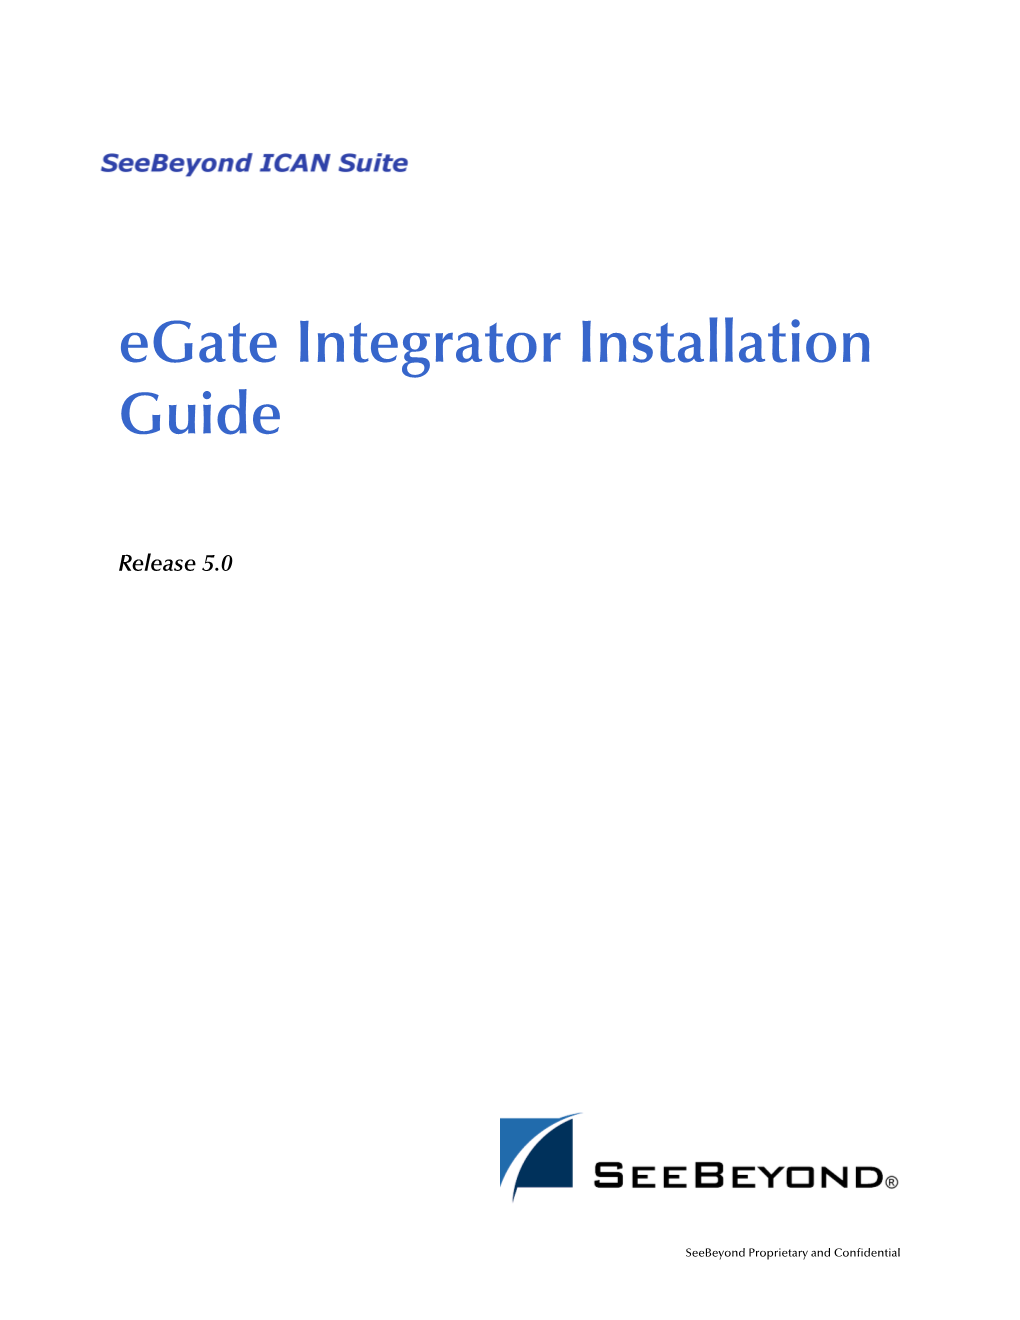 E*Gate Integrator Installation Guide